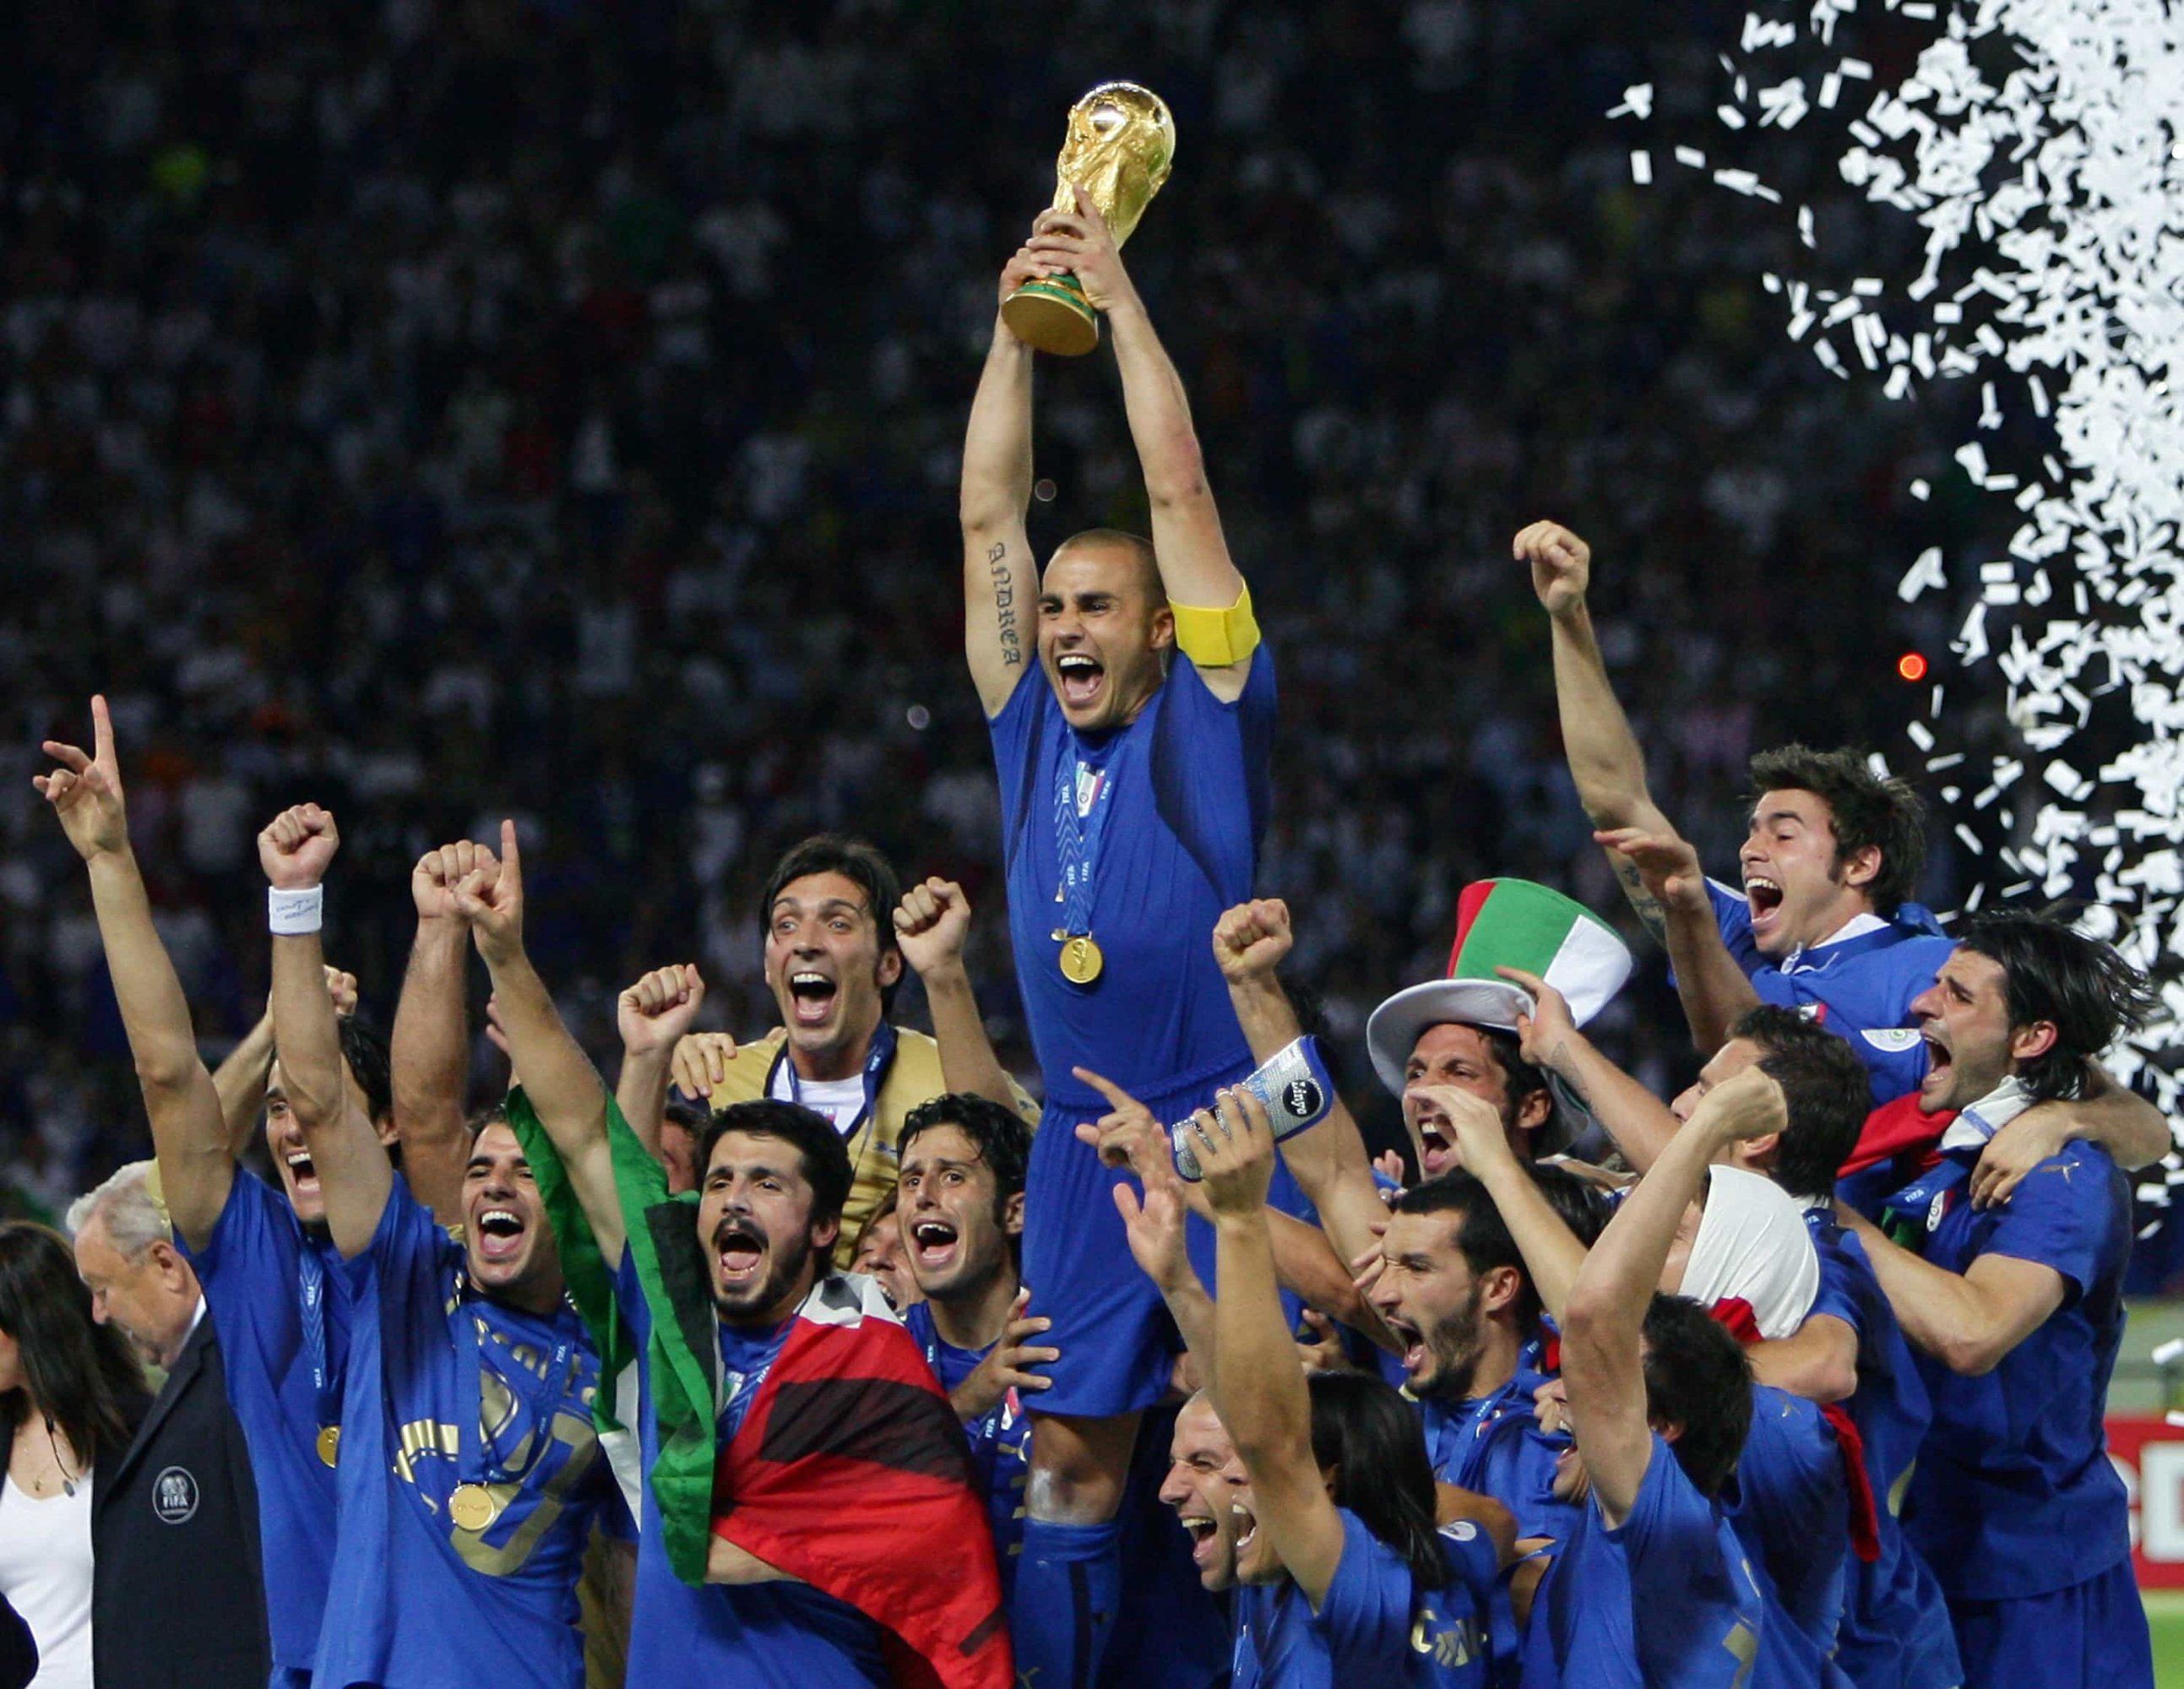 Edição dos Campeões: Itália Campeã da Copa do Mundo 2006